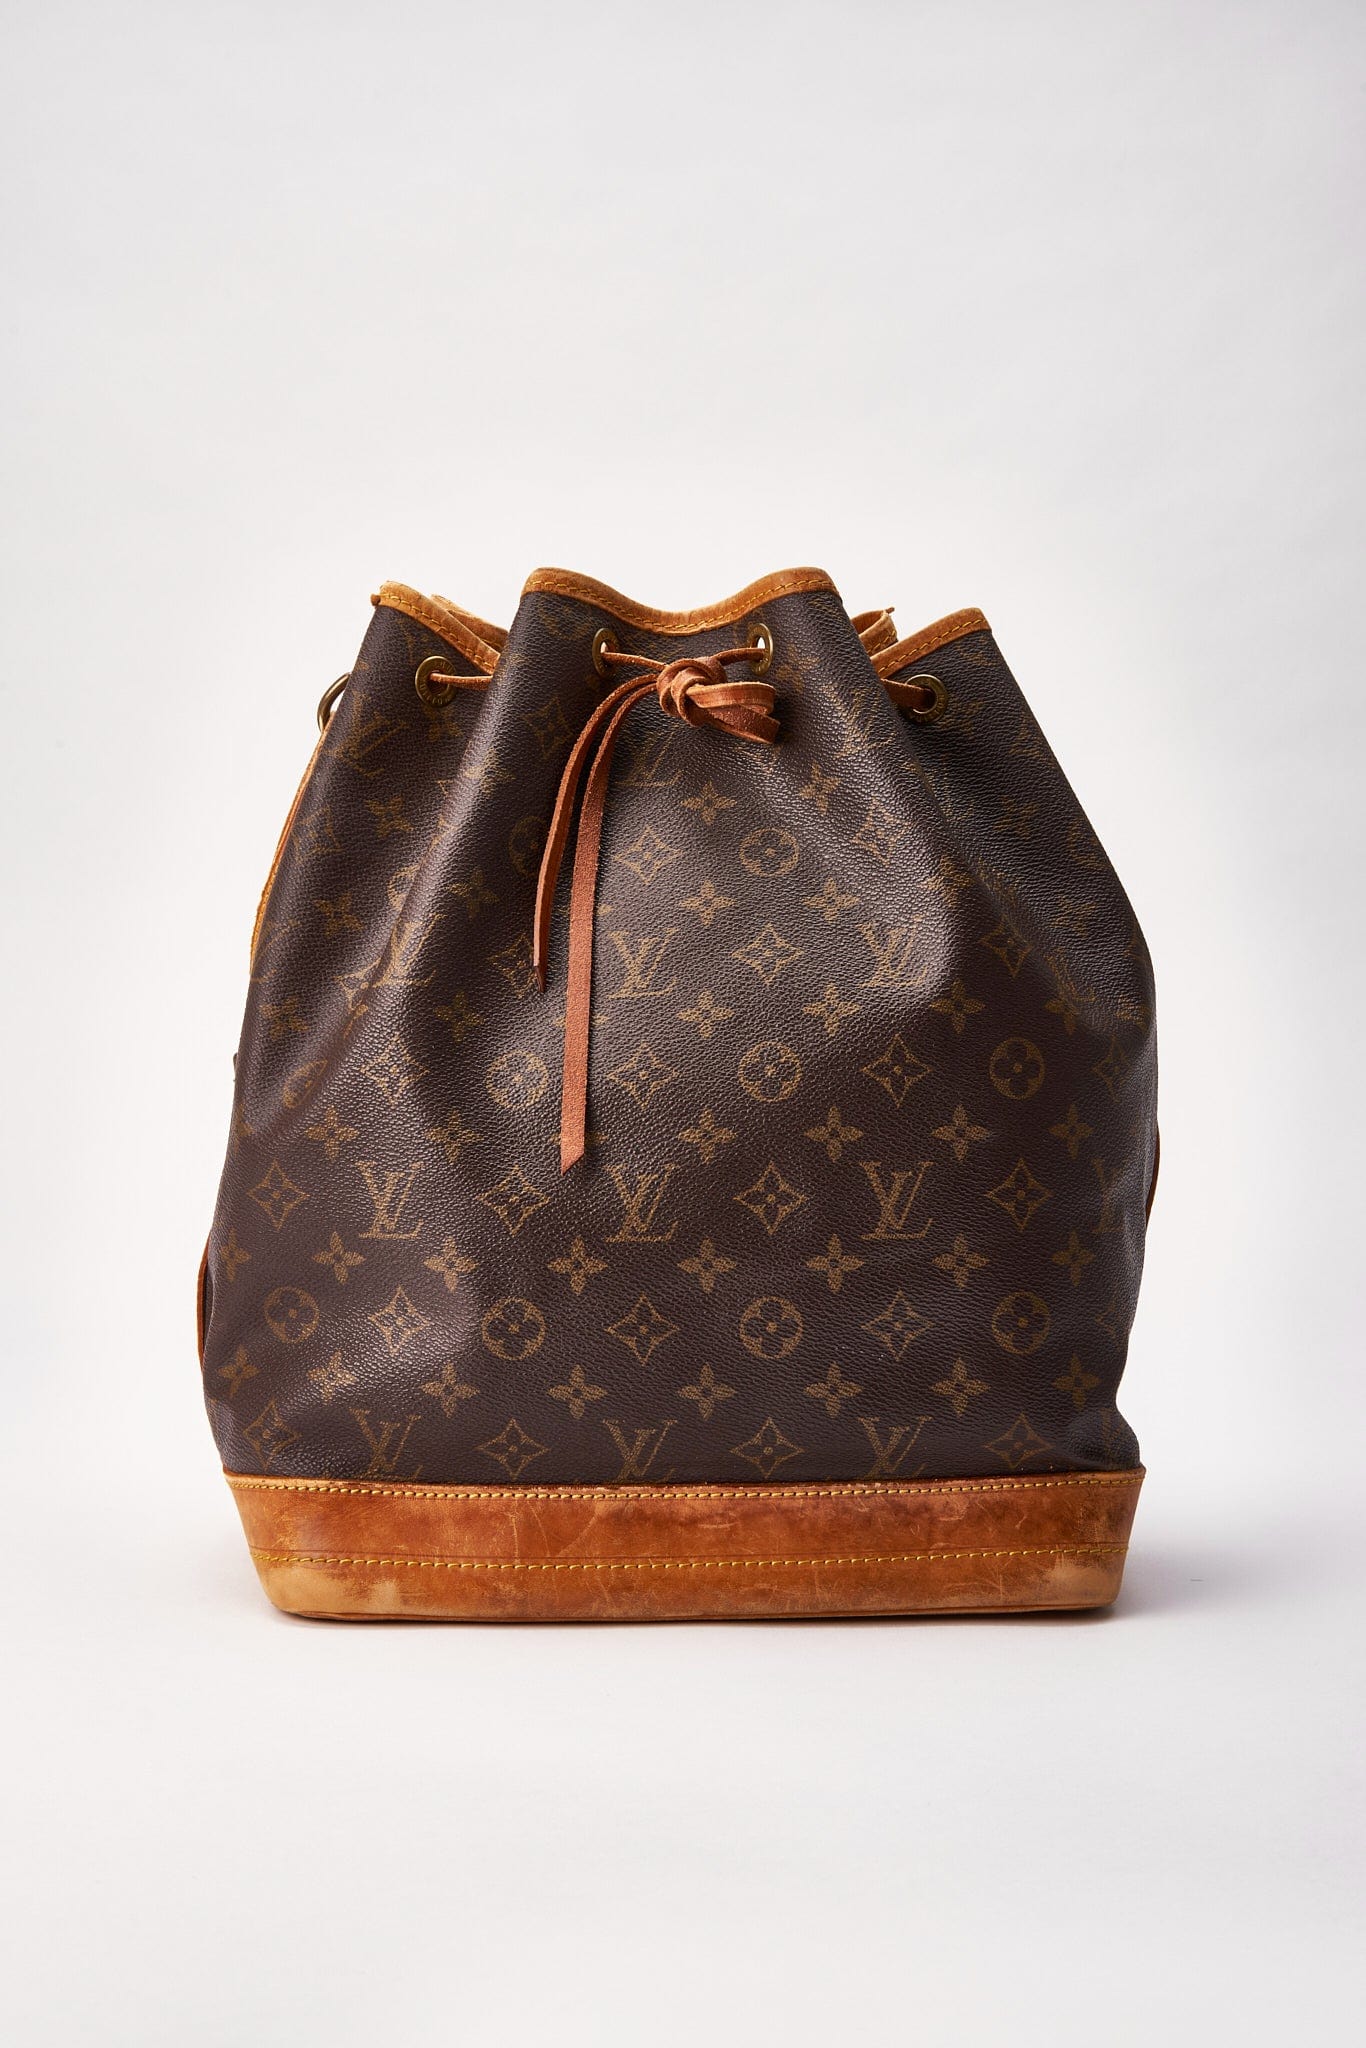 Louis Vuitton Noé Monogram Canvas Brown Bag